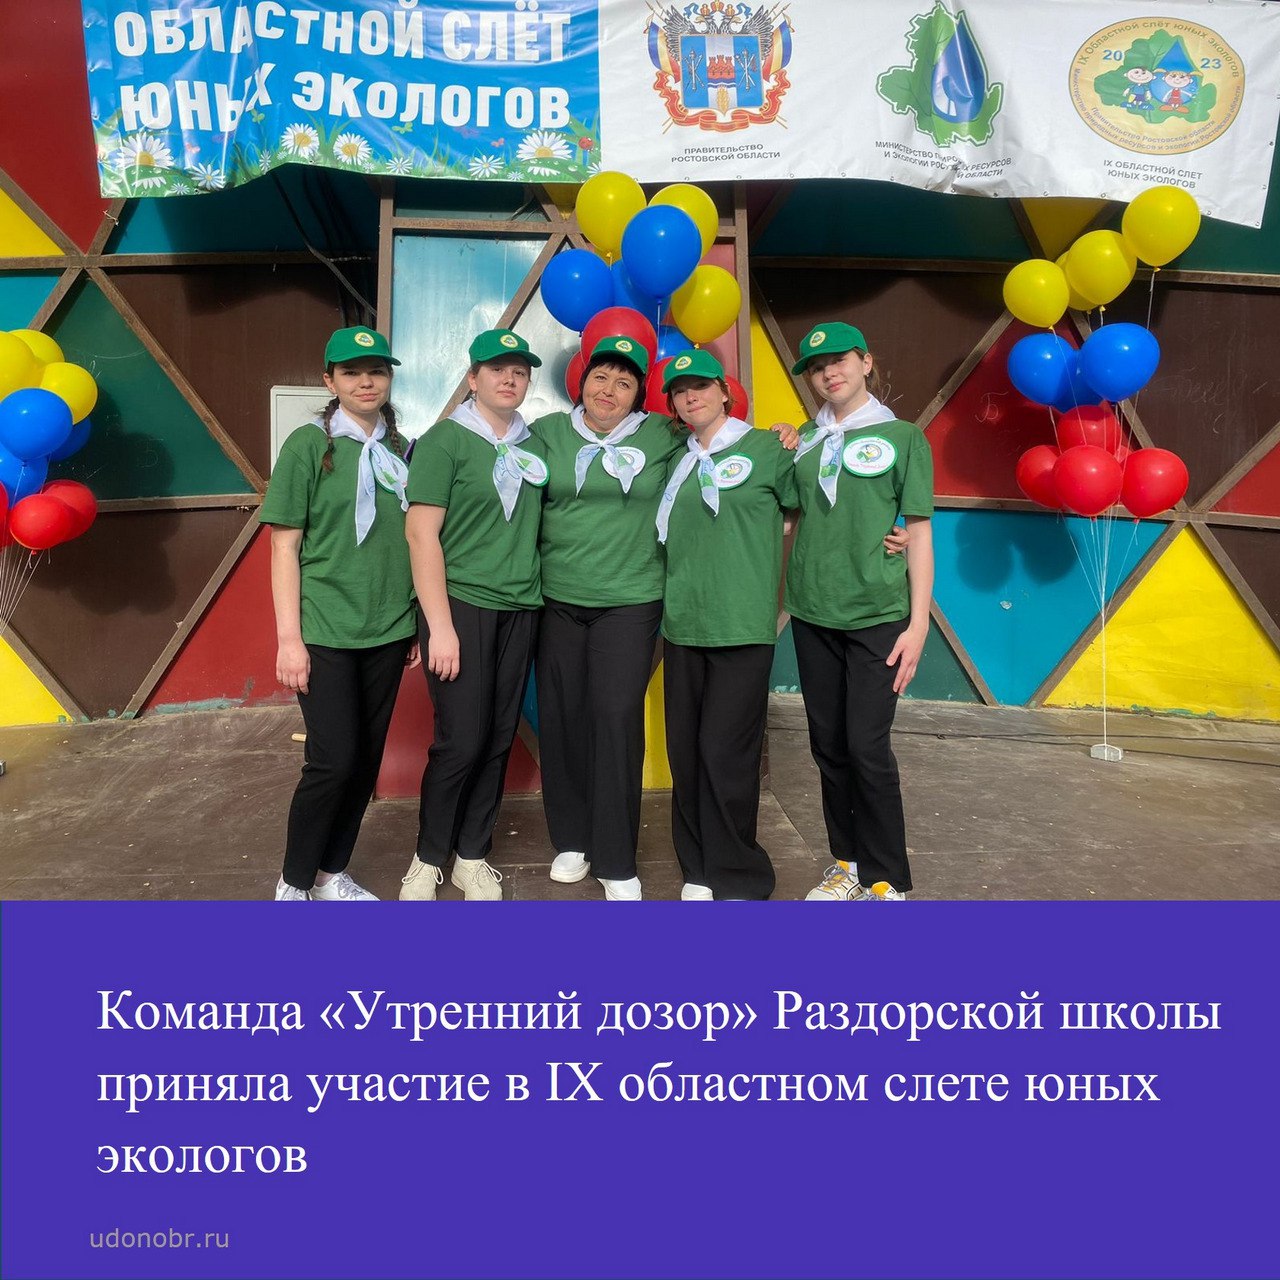 Команда «Утренний дозор» Раздорской школы приняла участие в IX областном слете юных экологов